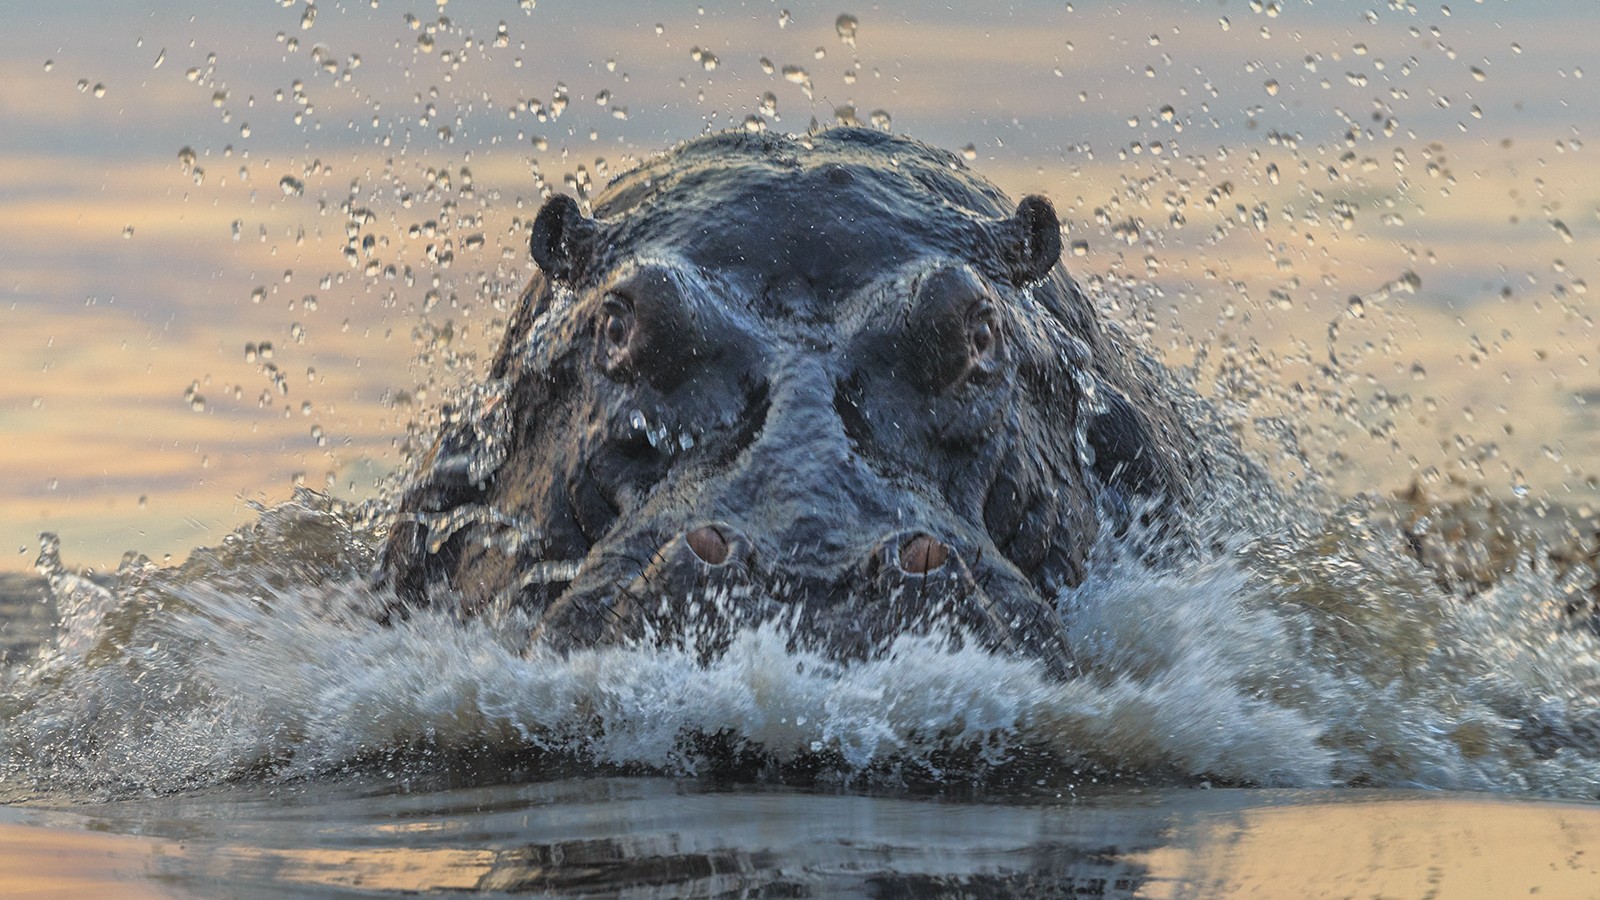 nijlpaard attack.jpg